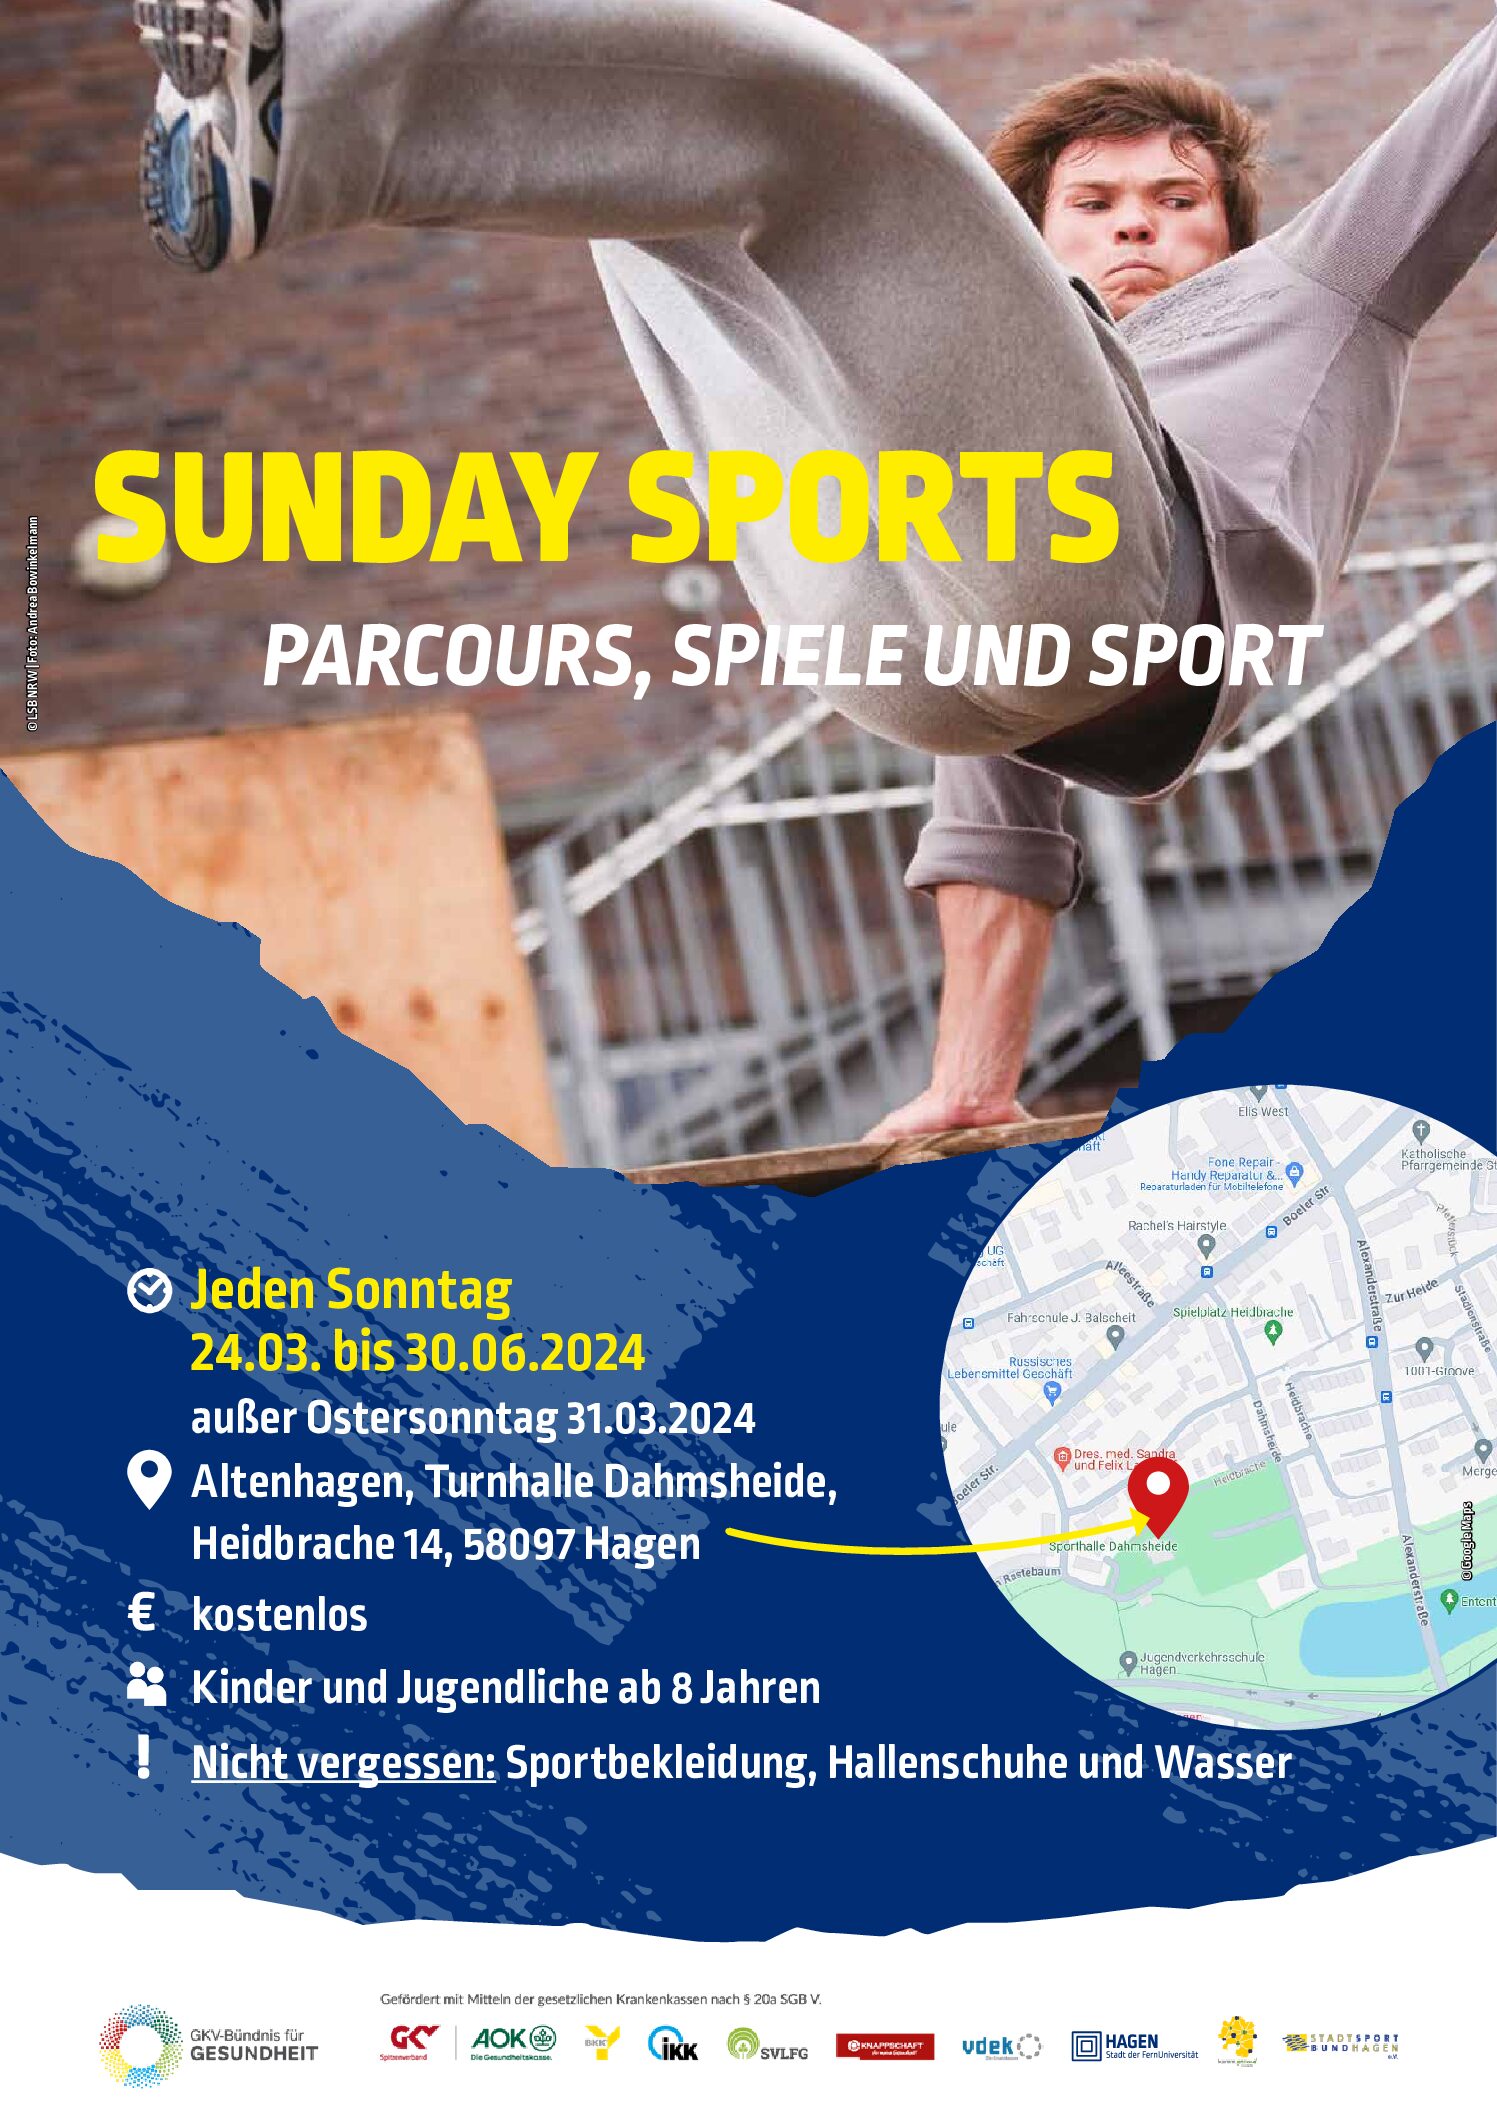 Sunday Sports - PARCOURS, SPIELE UND SPORT